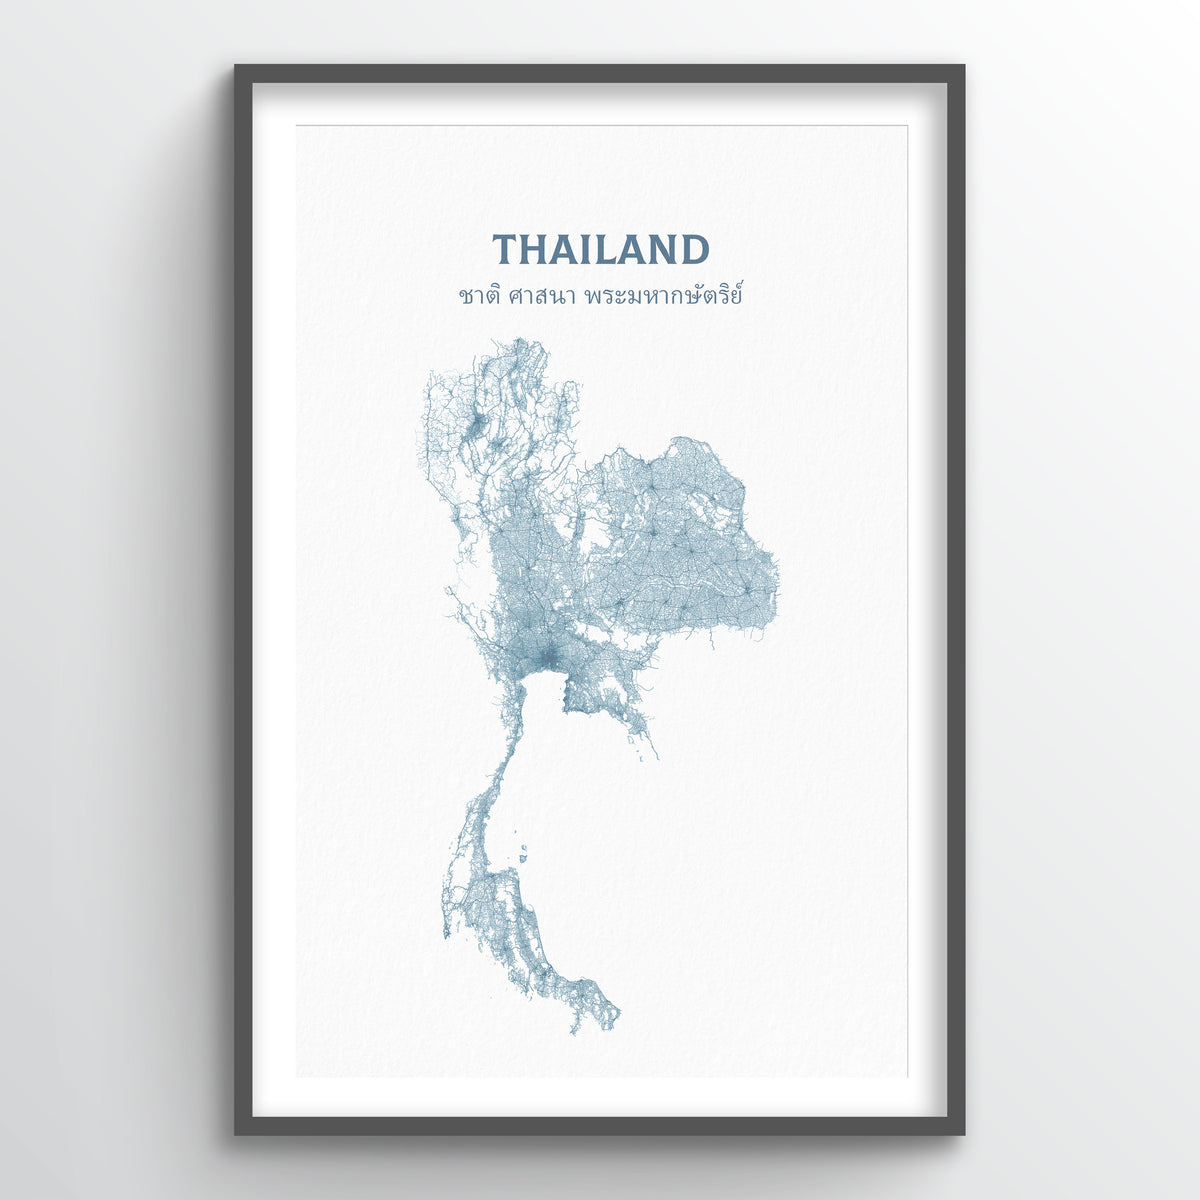 Thailand - All Roads Art Print